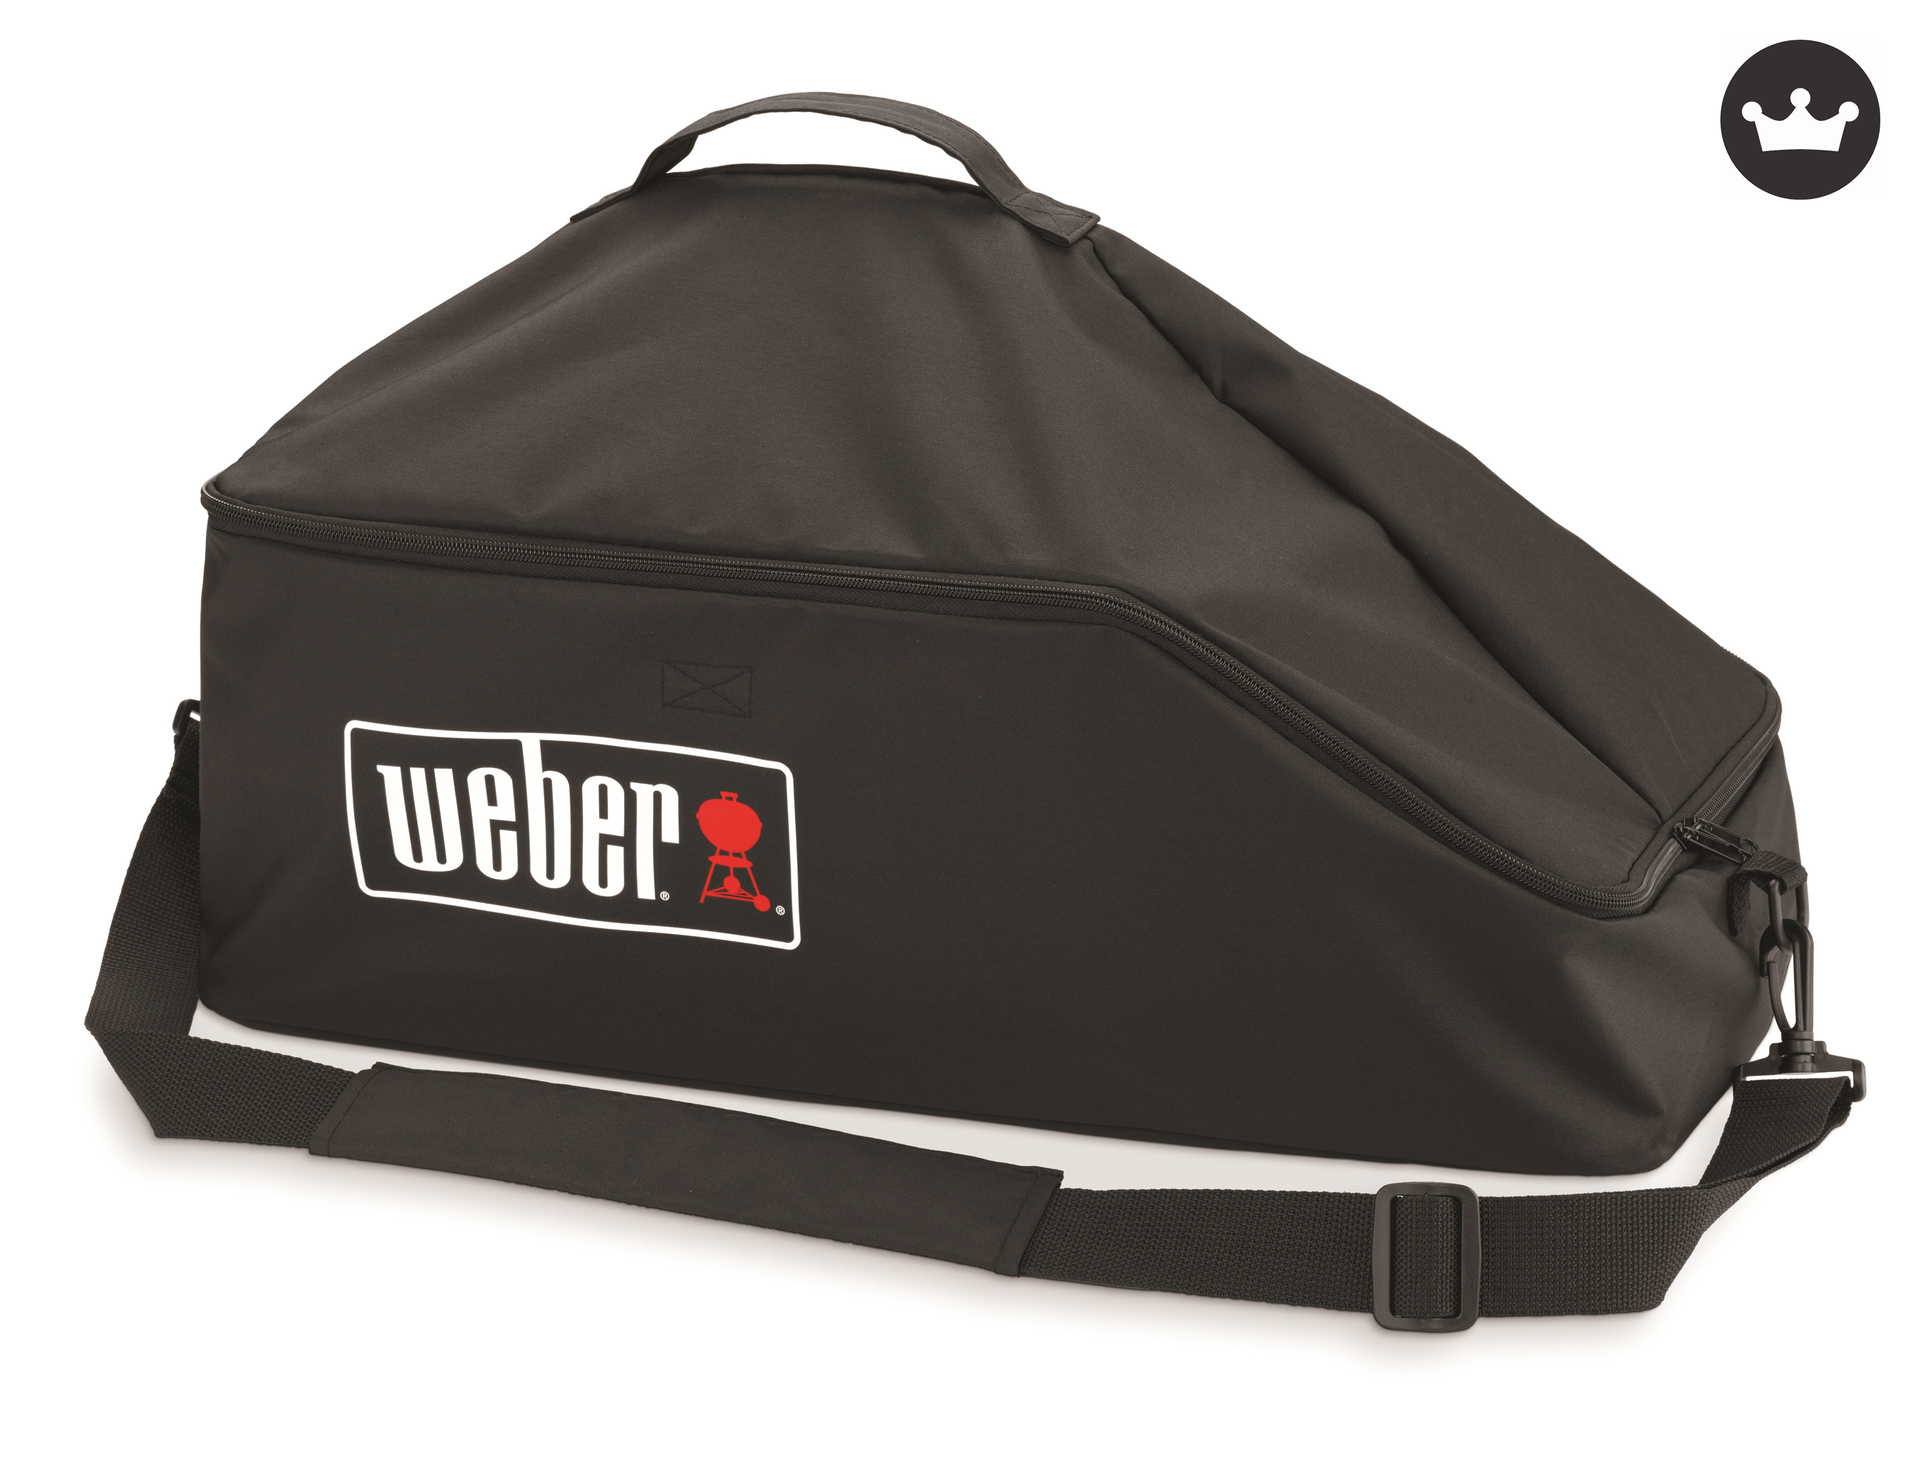 Weber-Stephen Premium Transporttasche für Go-Anywhere